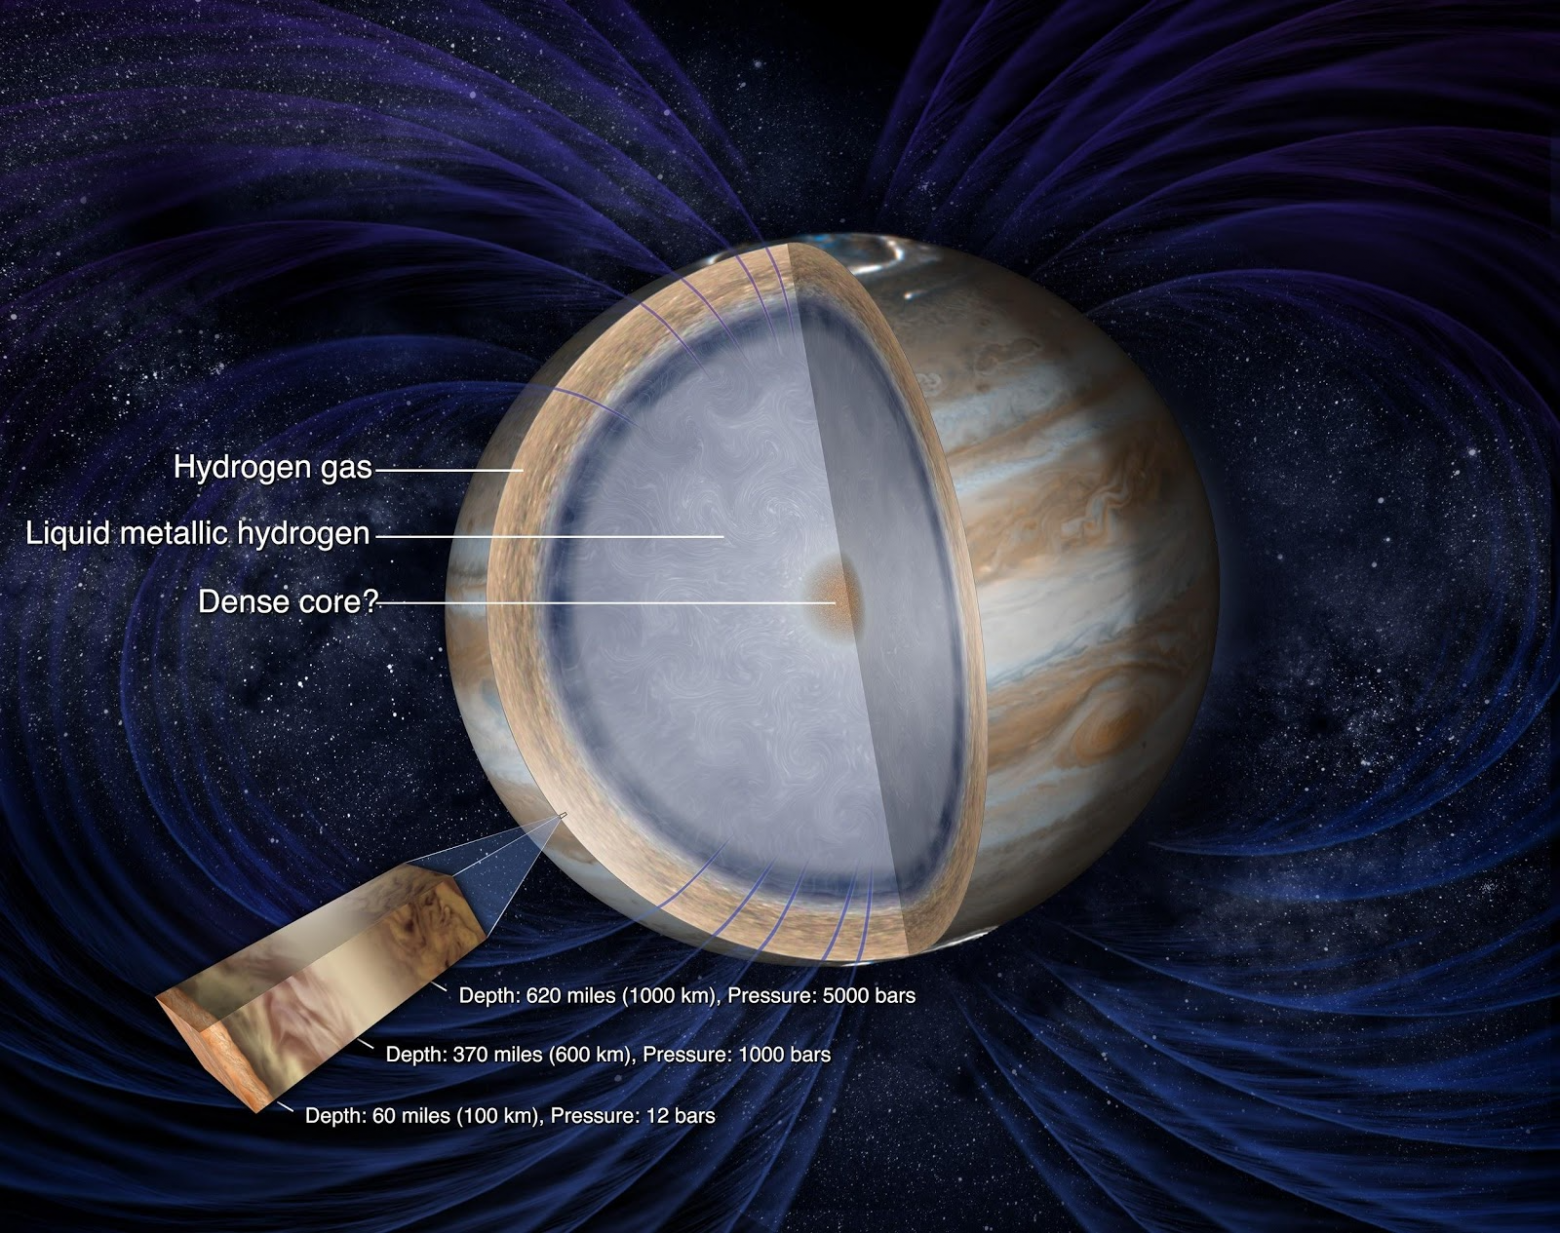 Под насыщенной парами поверхностью Юпитера простирается загадочно переливающийся разными цветами океан жидкого металлического водорода с причудливыми завихрениями. Изображение NASA.